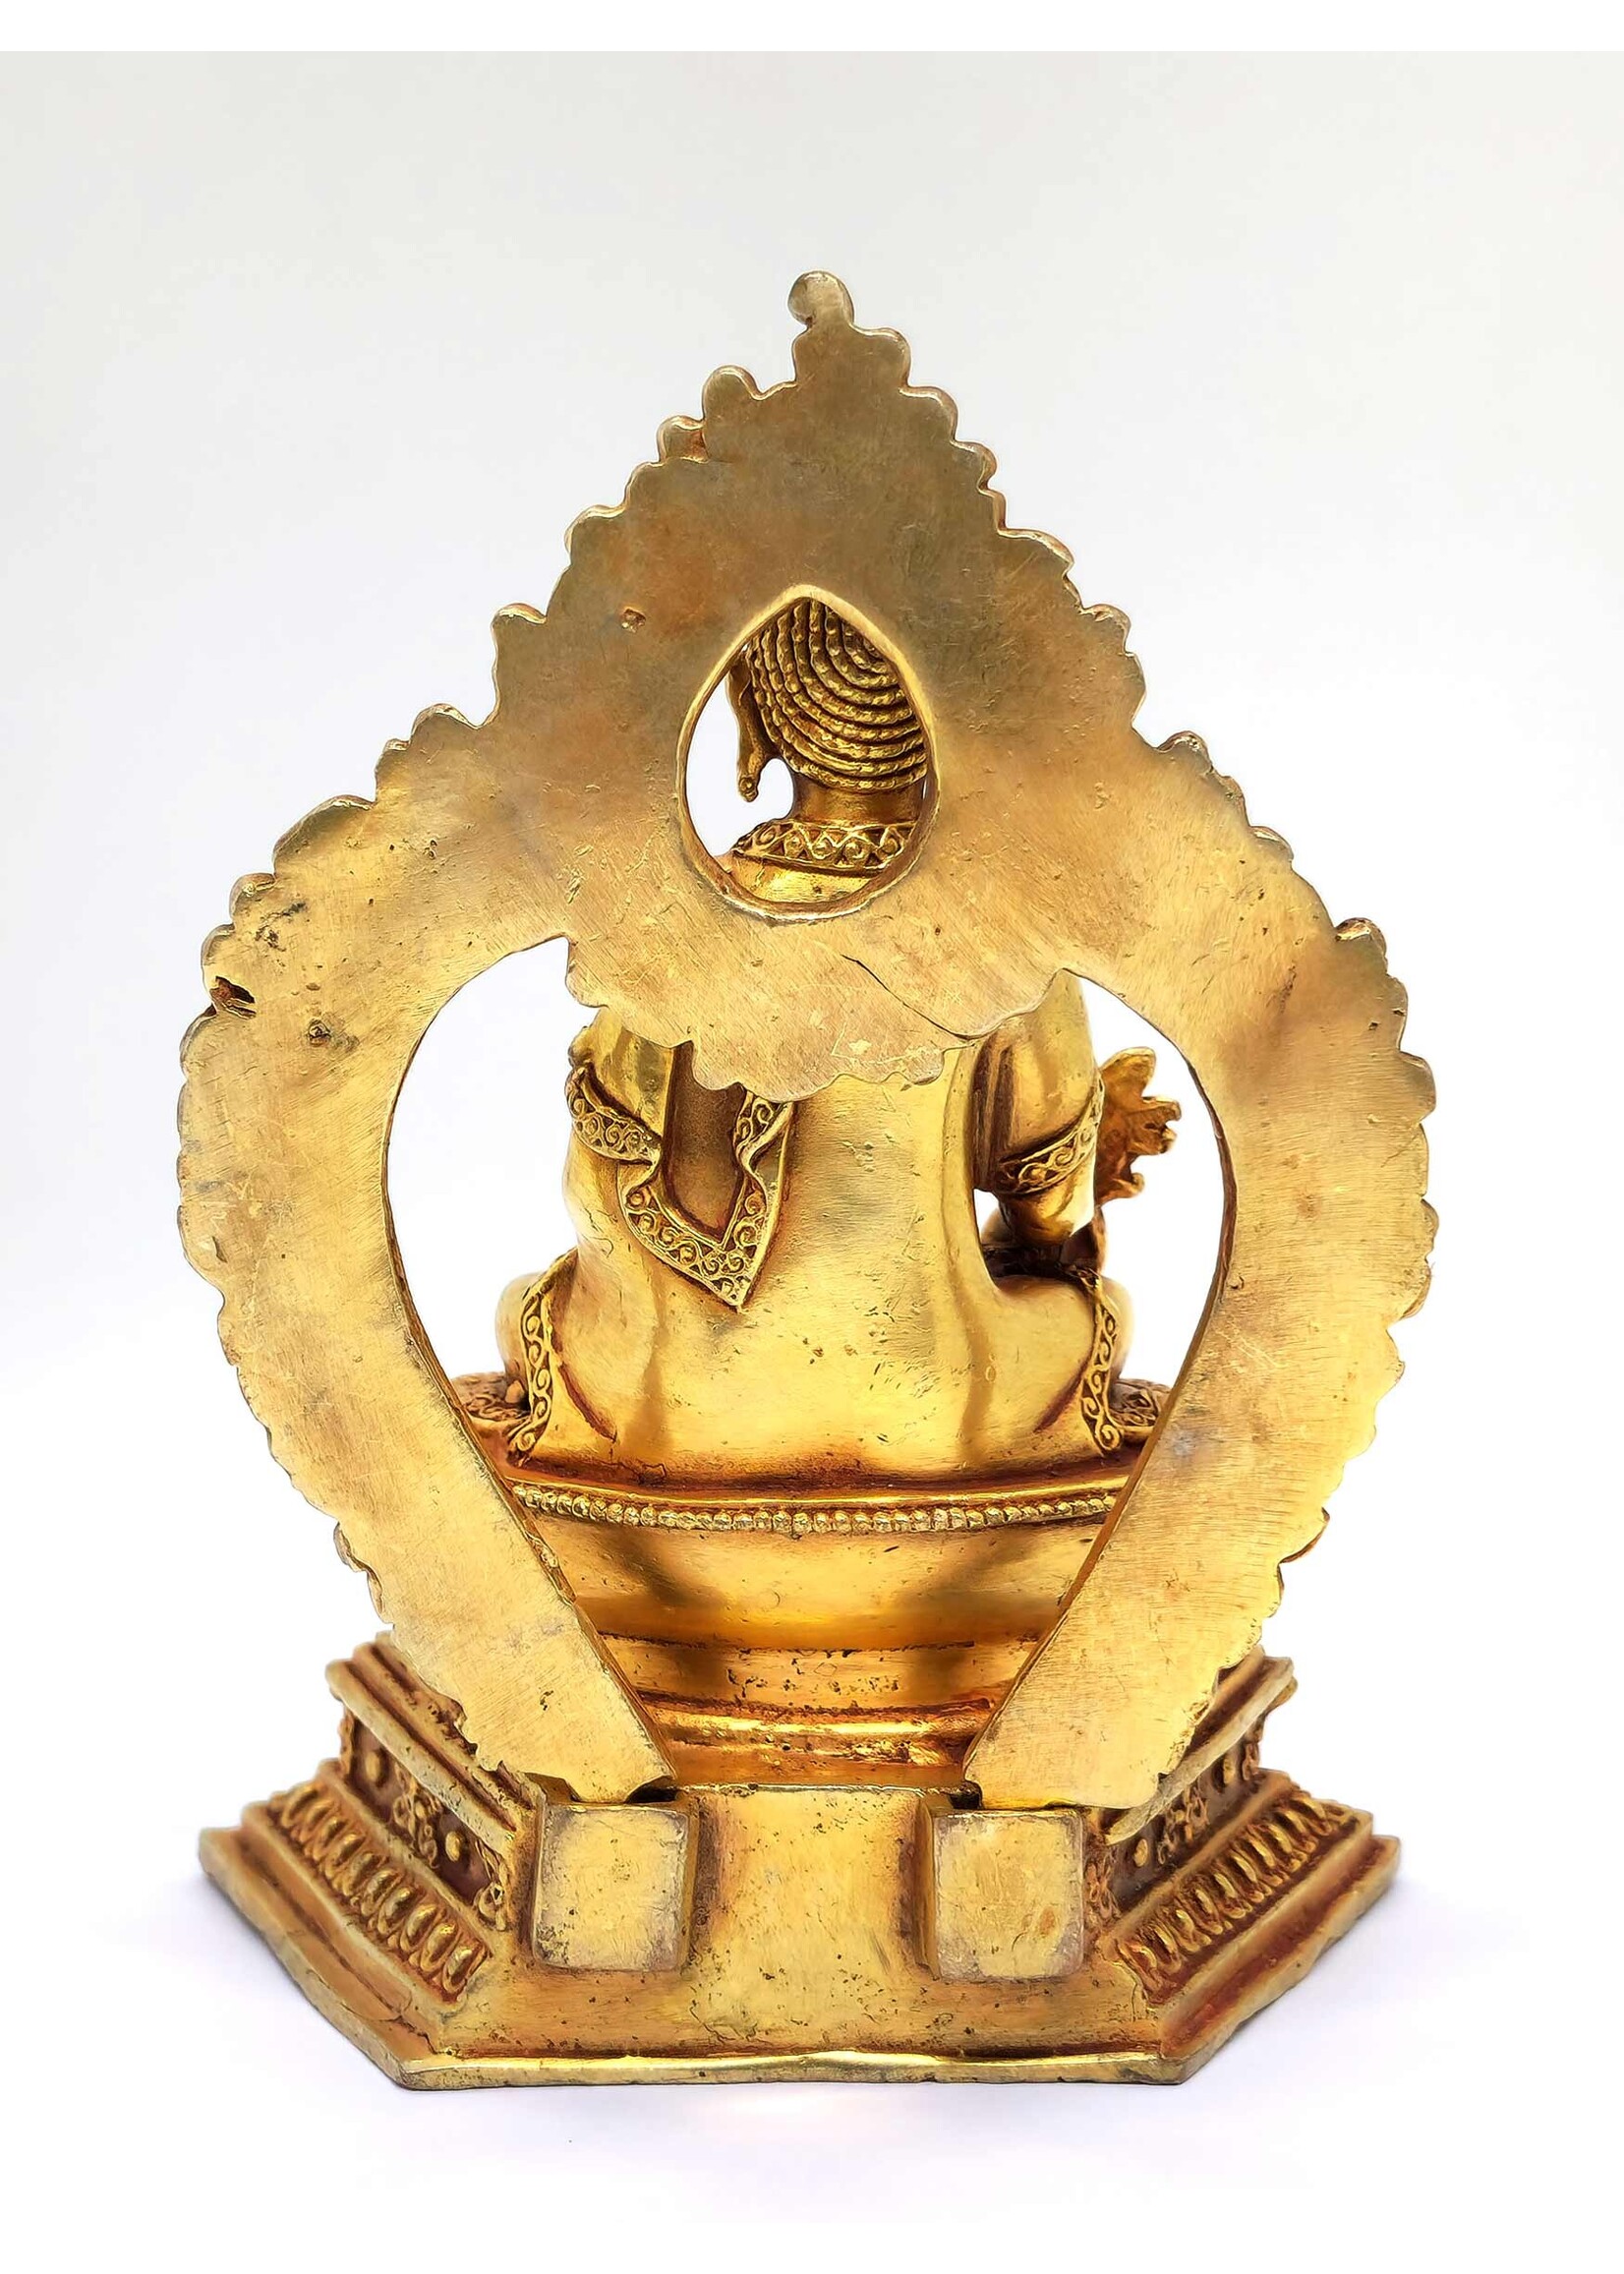 Statua di Buddha della Medicina con trono